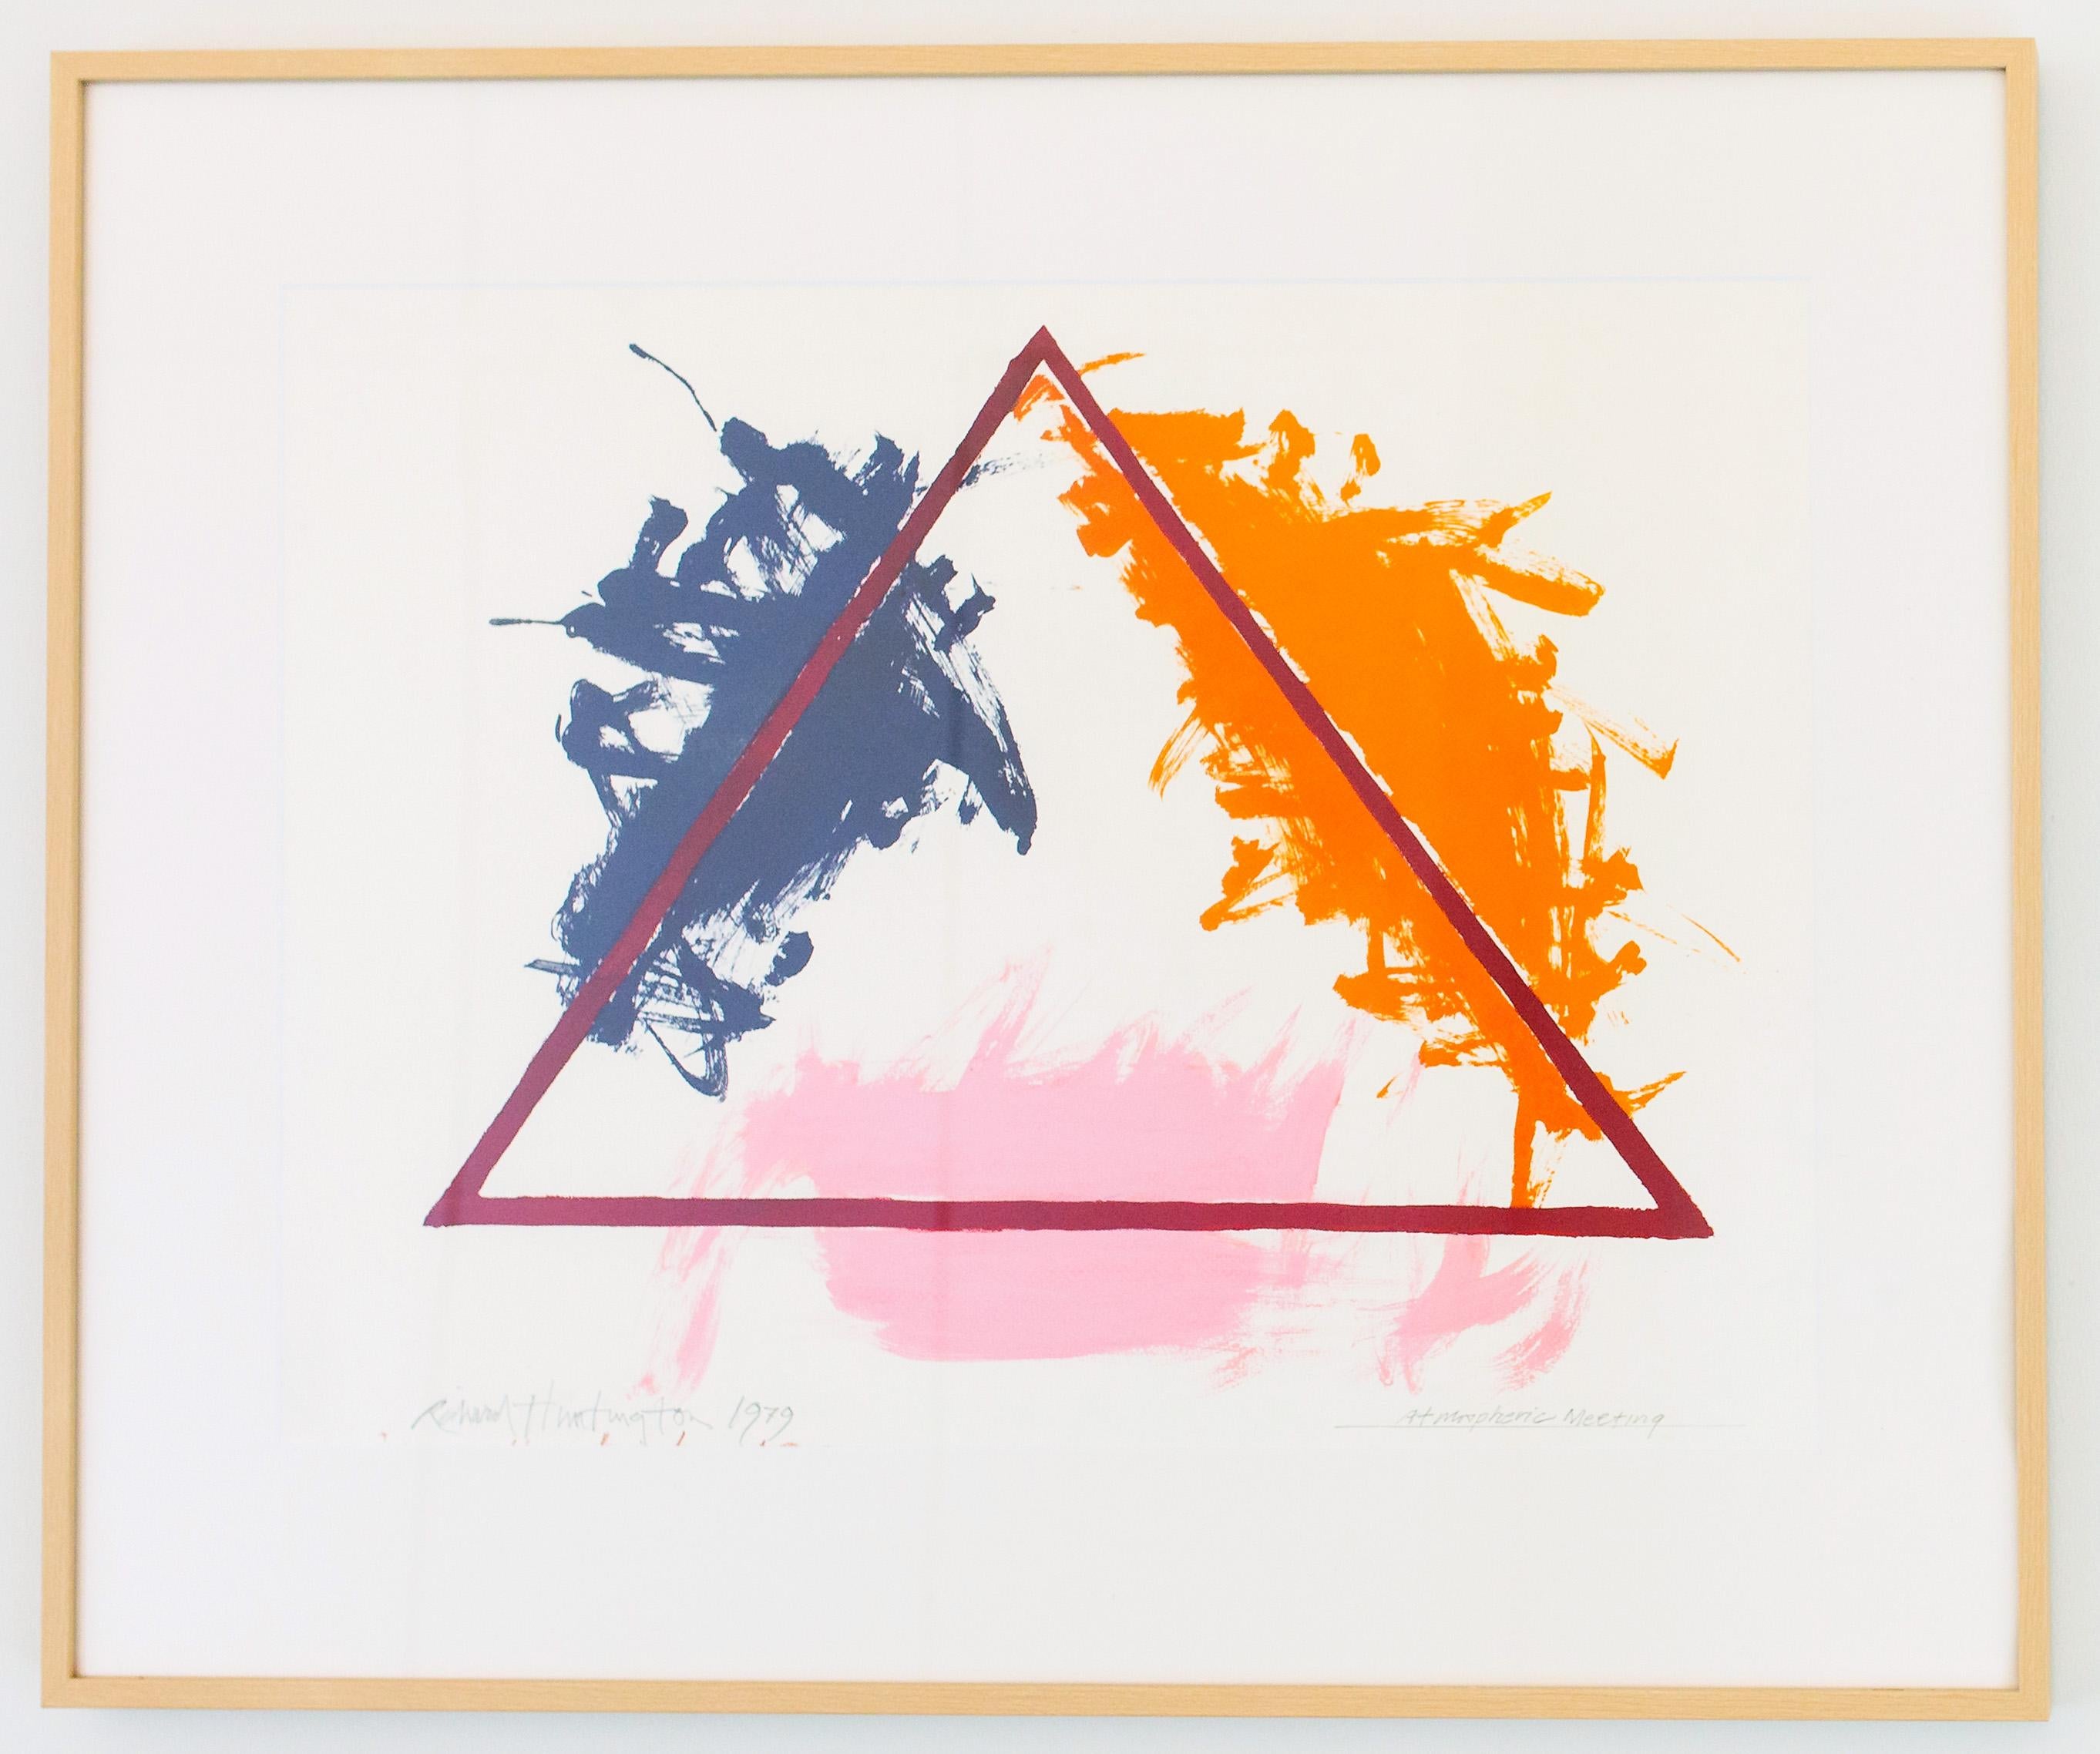 Triangle de peinture géométrique abstraite moderne américaine, encadrée et colorée, 1979 - Painting de Richard Huntington